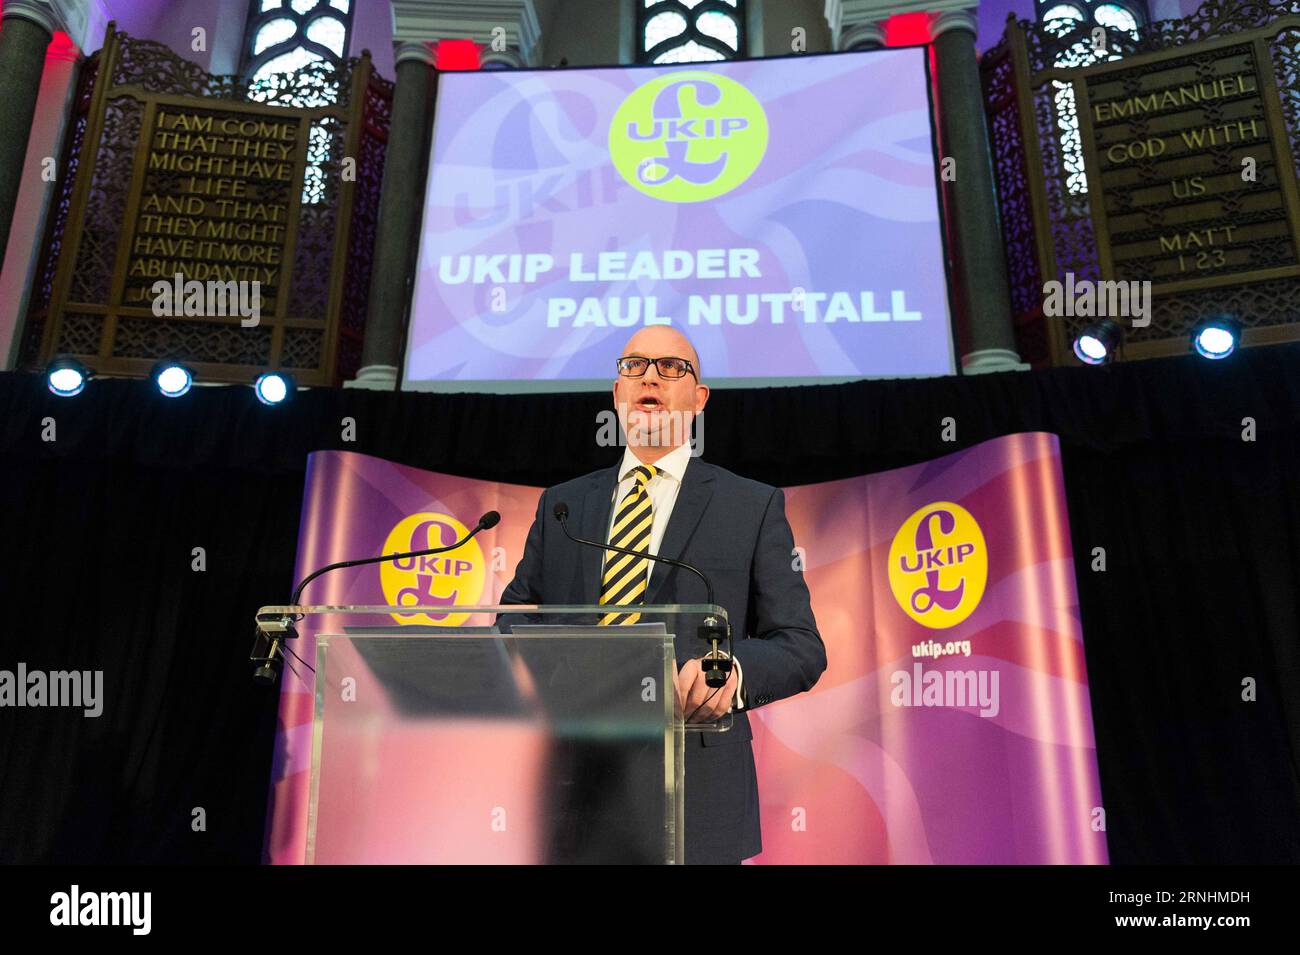 (161128) -- LONDON, 28. November 2016 -- der neue UKIP-Führer Paul Nuttall hält eine Rede am 28. November 2016 in London, Großbritannien. Paul Nuttall, Mitglied des Europäischen Parlaments, wurde am Montag zum neuen Vorsitzenden der britischen Unabhängigkeitspartei (UKIP) ernannt, einer der wichtigsten politischen Parteien Großbritanniens. )(yk) GROSSBRITANNIEN-LONDON-UKIP FÜHRUNGSERGEBNISSE RayxTang PUBLICATIONxNOTxINxCHN London Nov 28 2016 der neue UKIP-Führer Paul Nuttall hält AM 28 2016. November in London eine Rede Großbritanniens Mitglied des Europäischen Parlaments, Paul Nuttall, was Montag als neuer Führer der britischen Unabhängigkeitspartei UKIP bezeichnet hat Stockfoto